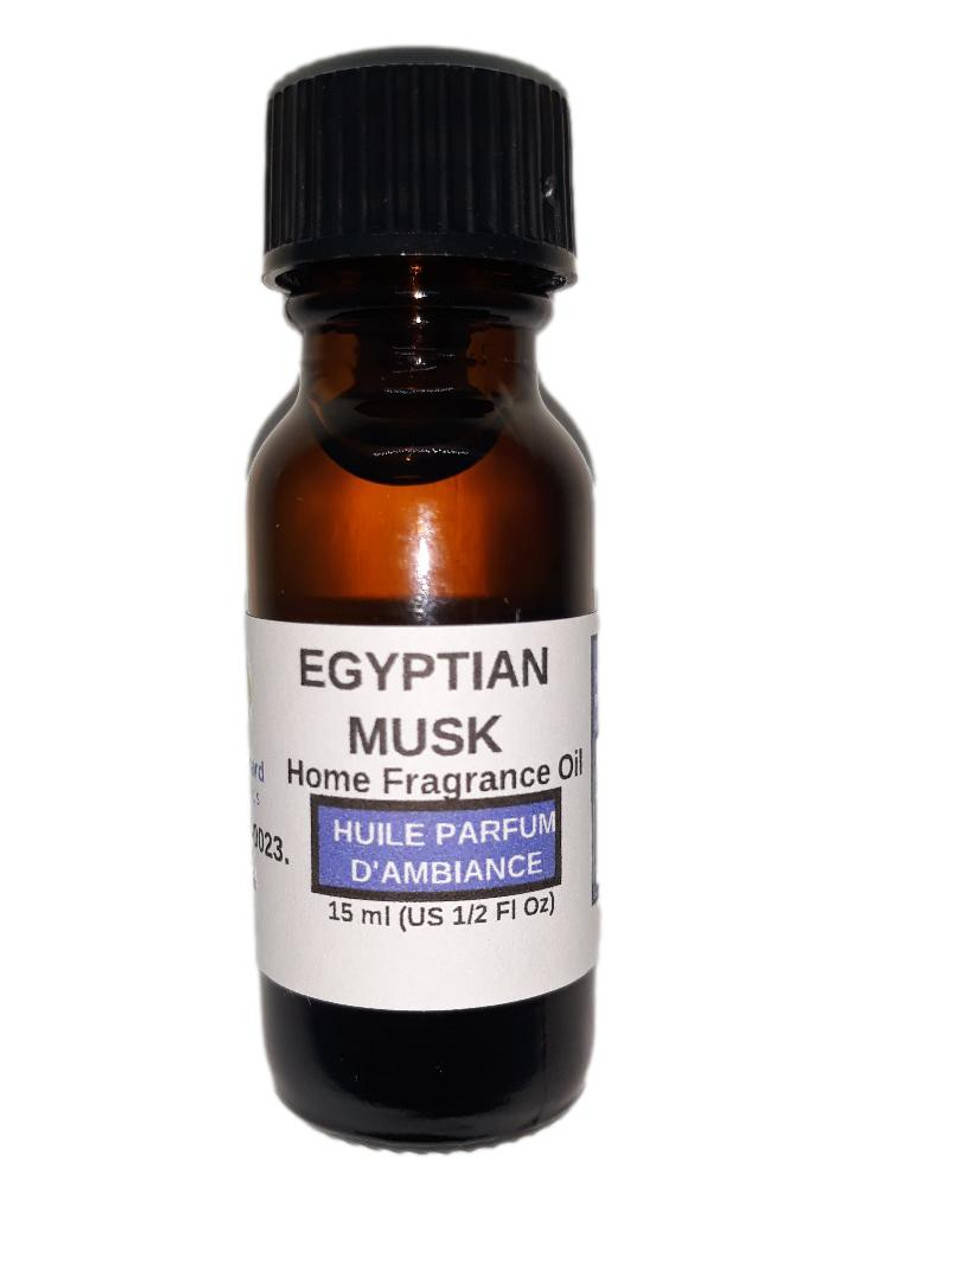 Egyptian Musk Home Fragrance Oil